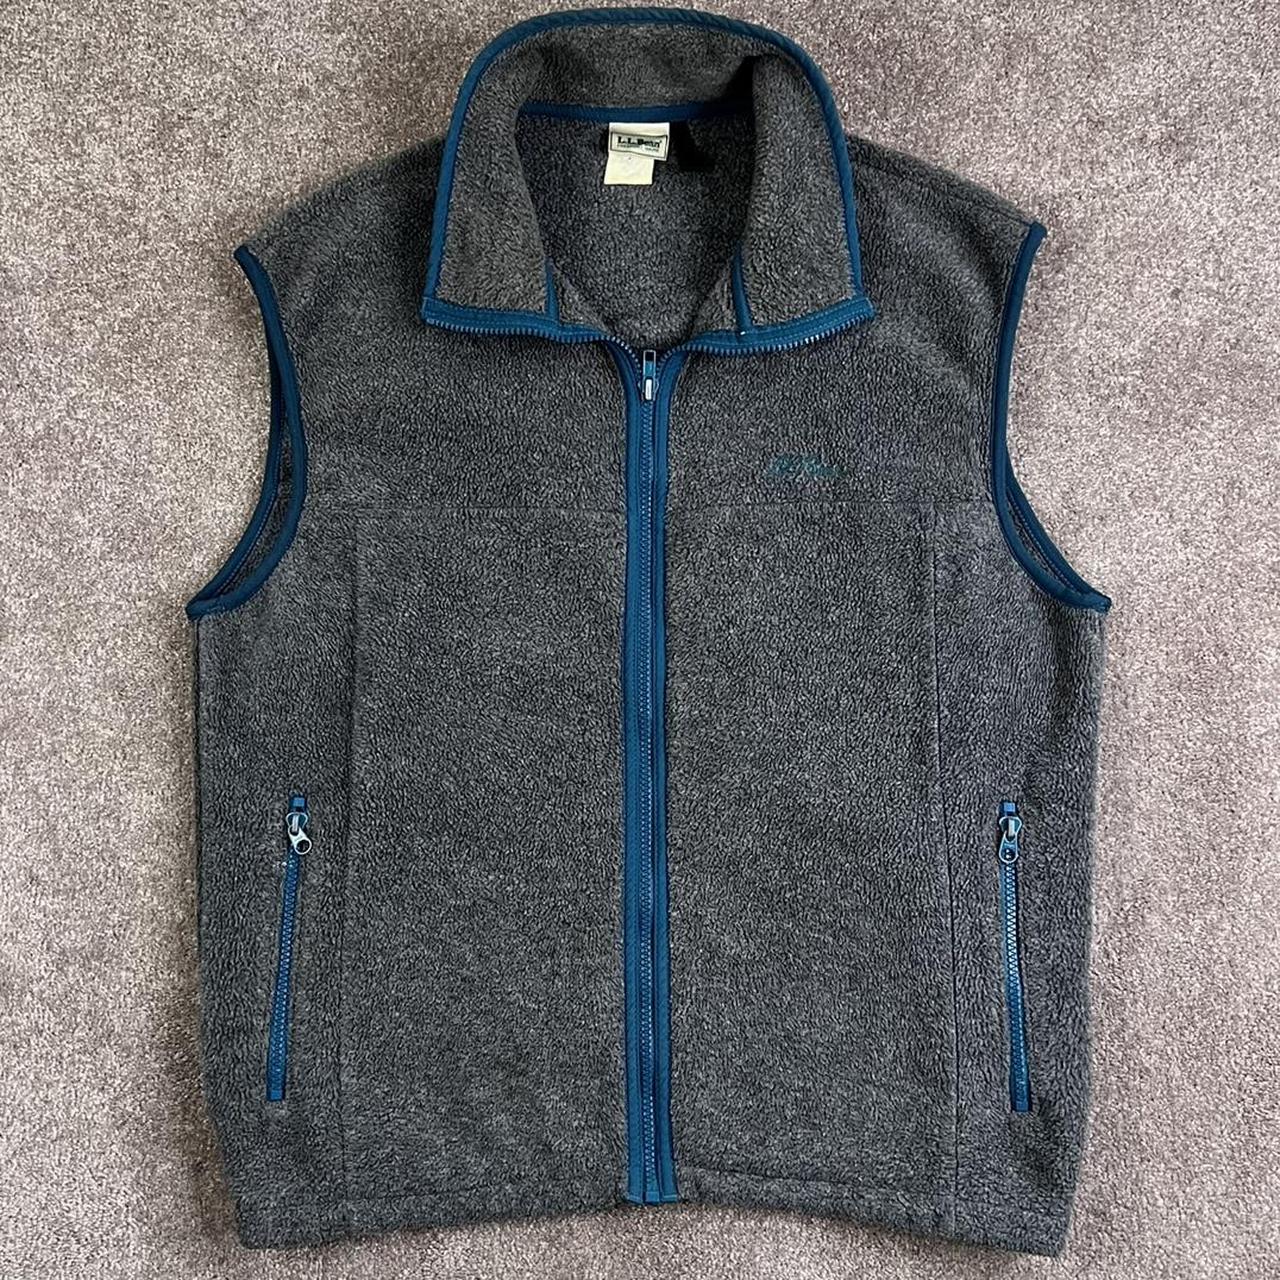 Product Image 1 - Vintage LL Bean fleece vest.

Men's